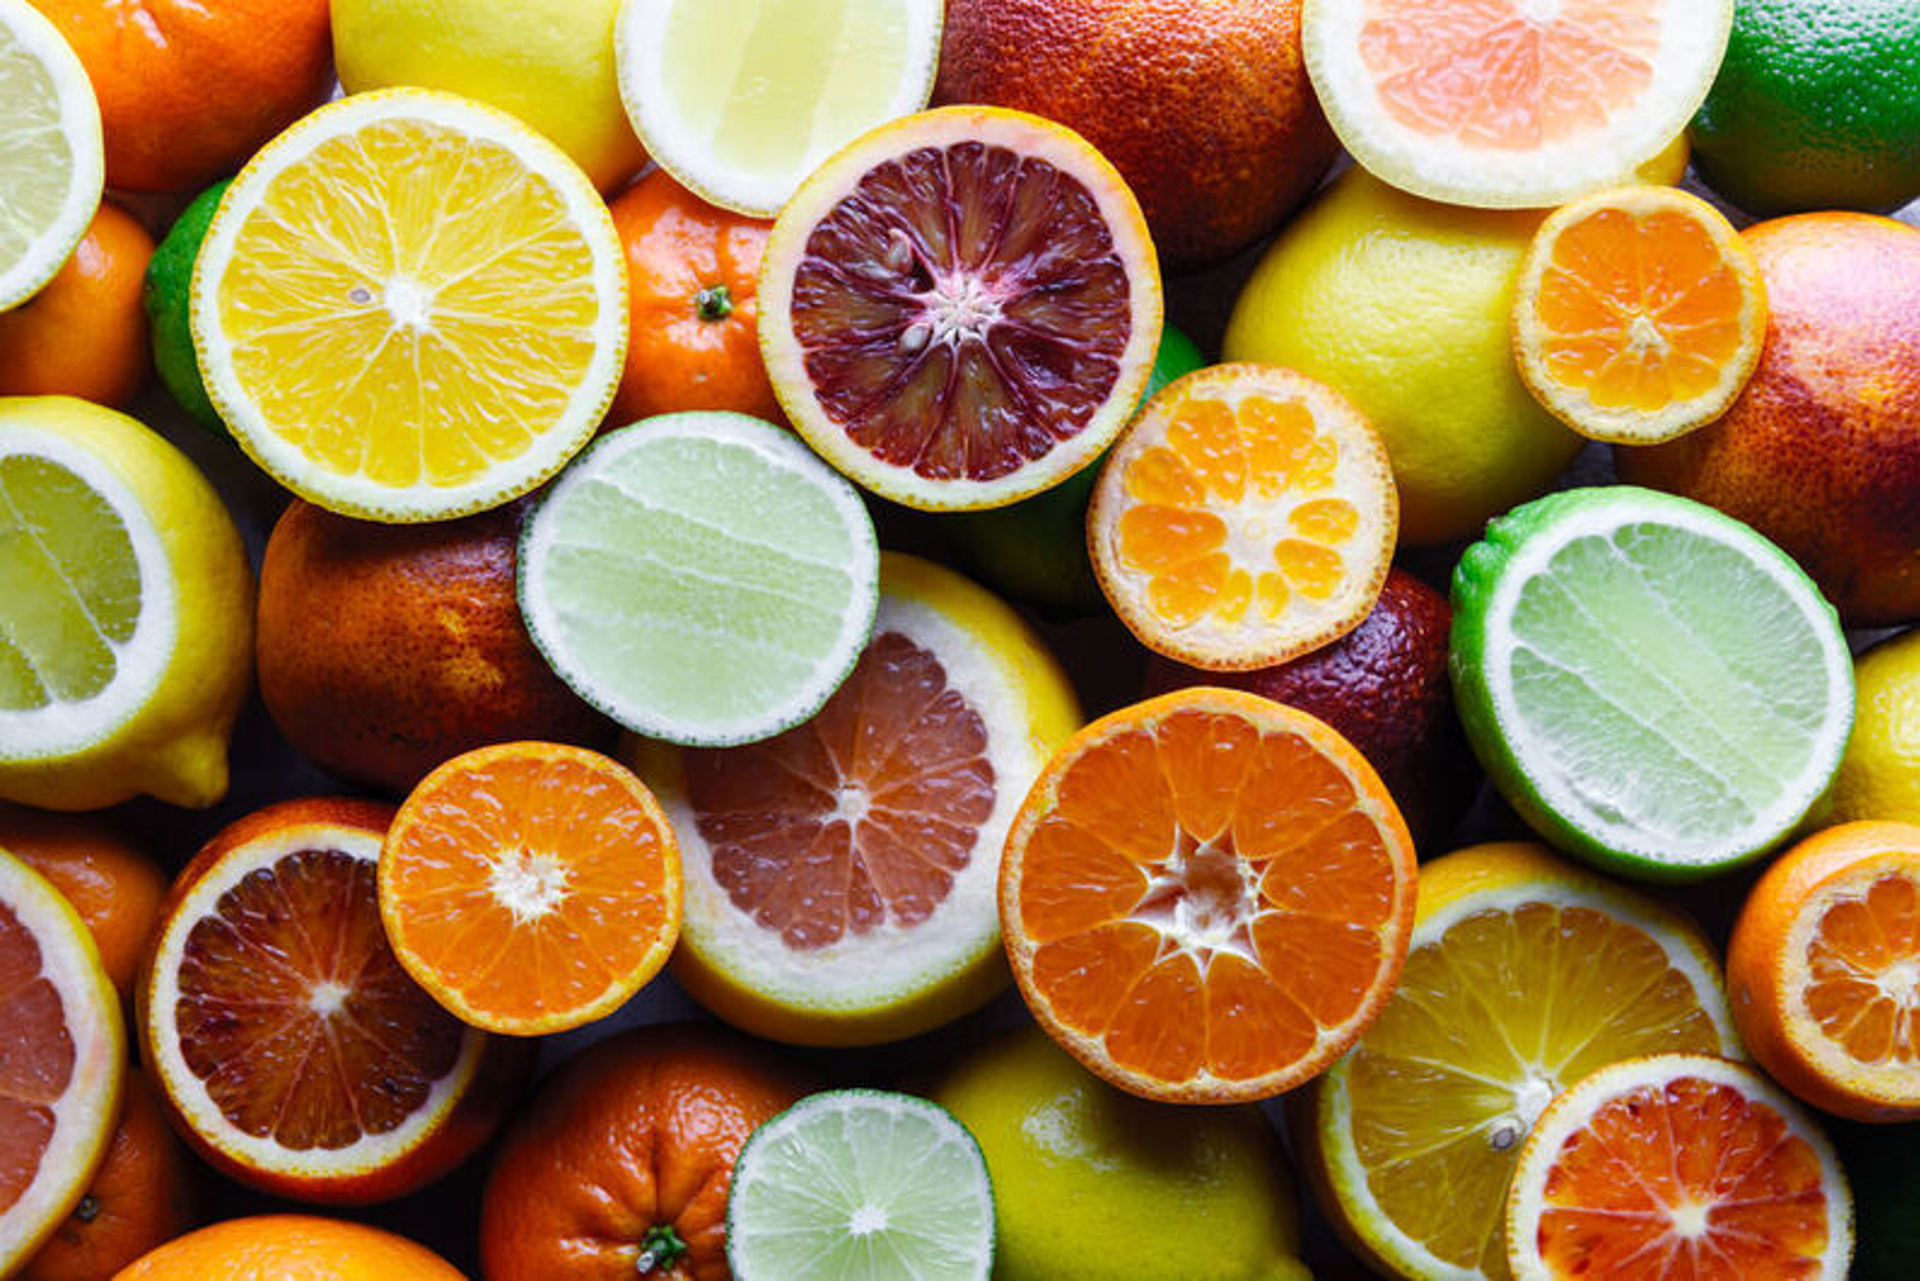 C vitamini faydaları nelerdir?